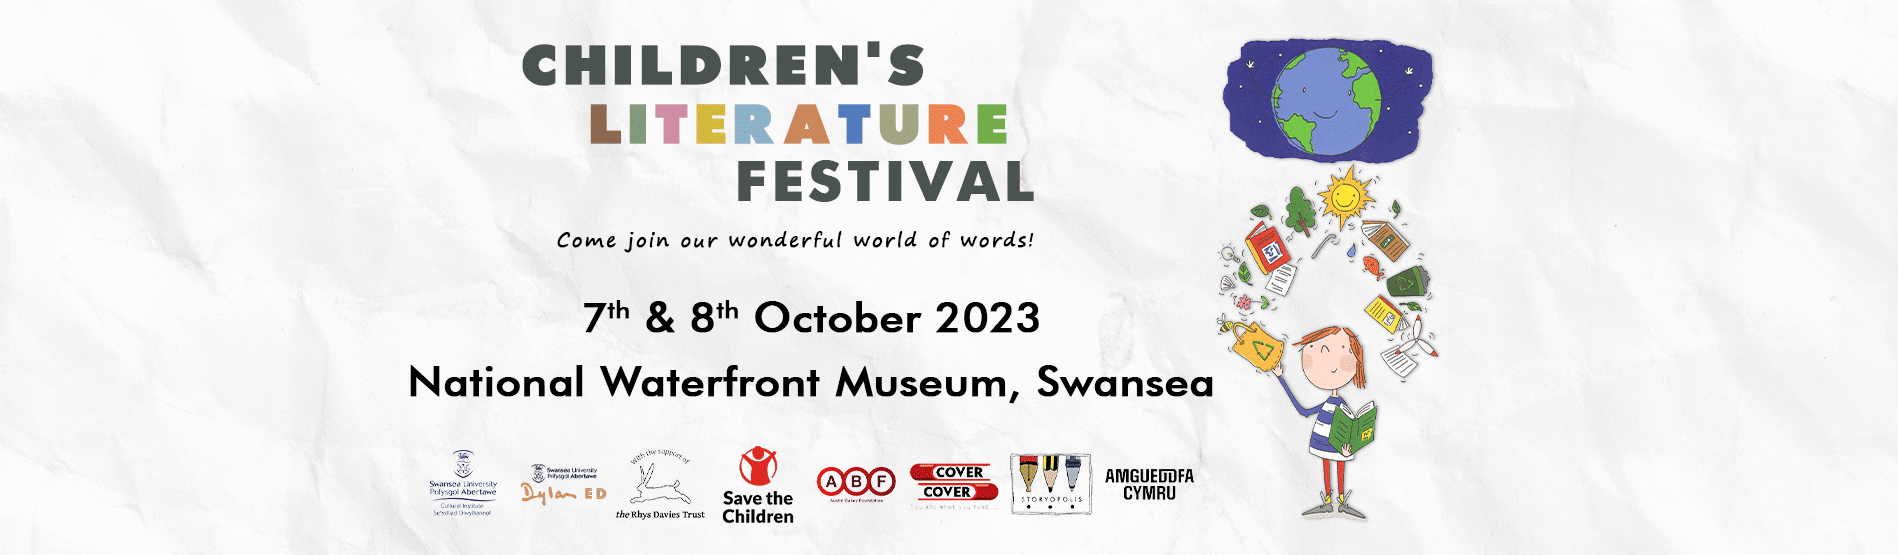 Children's Literature Festival Header